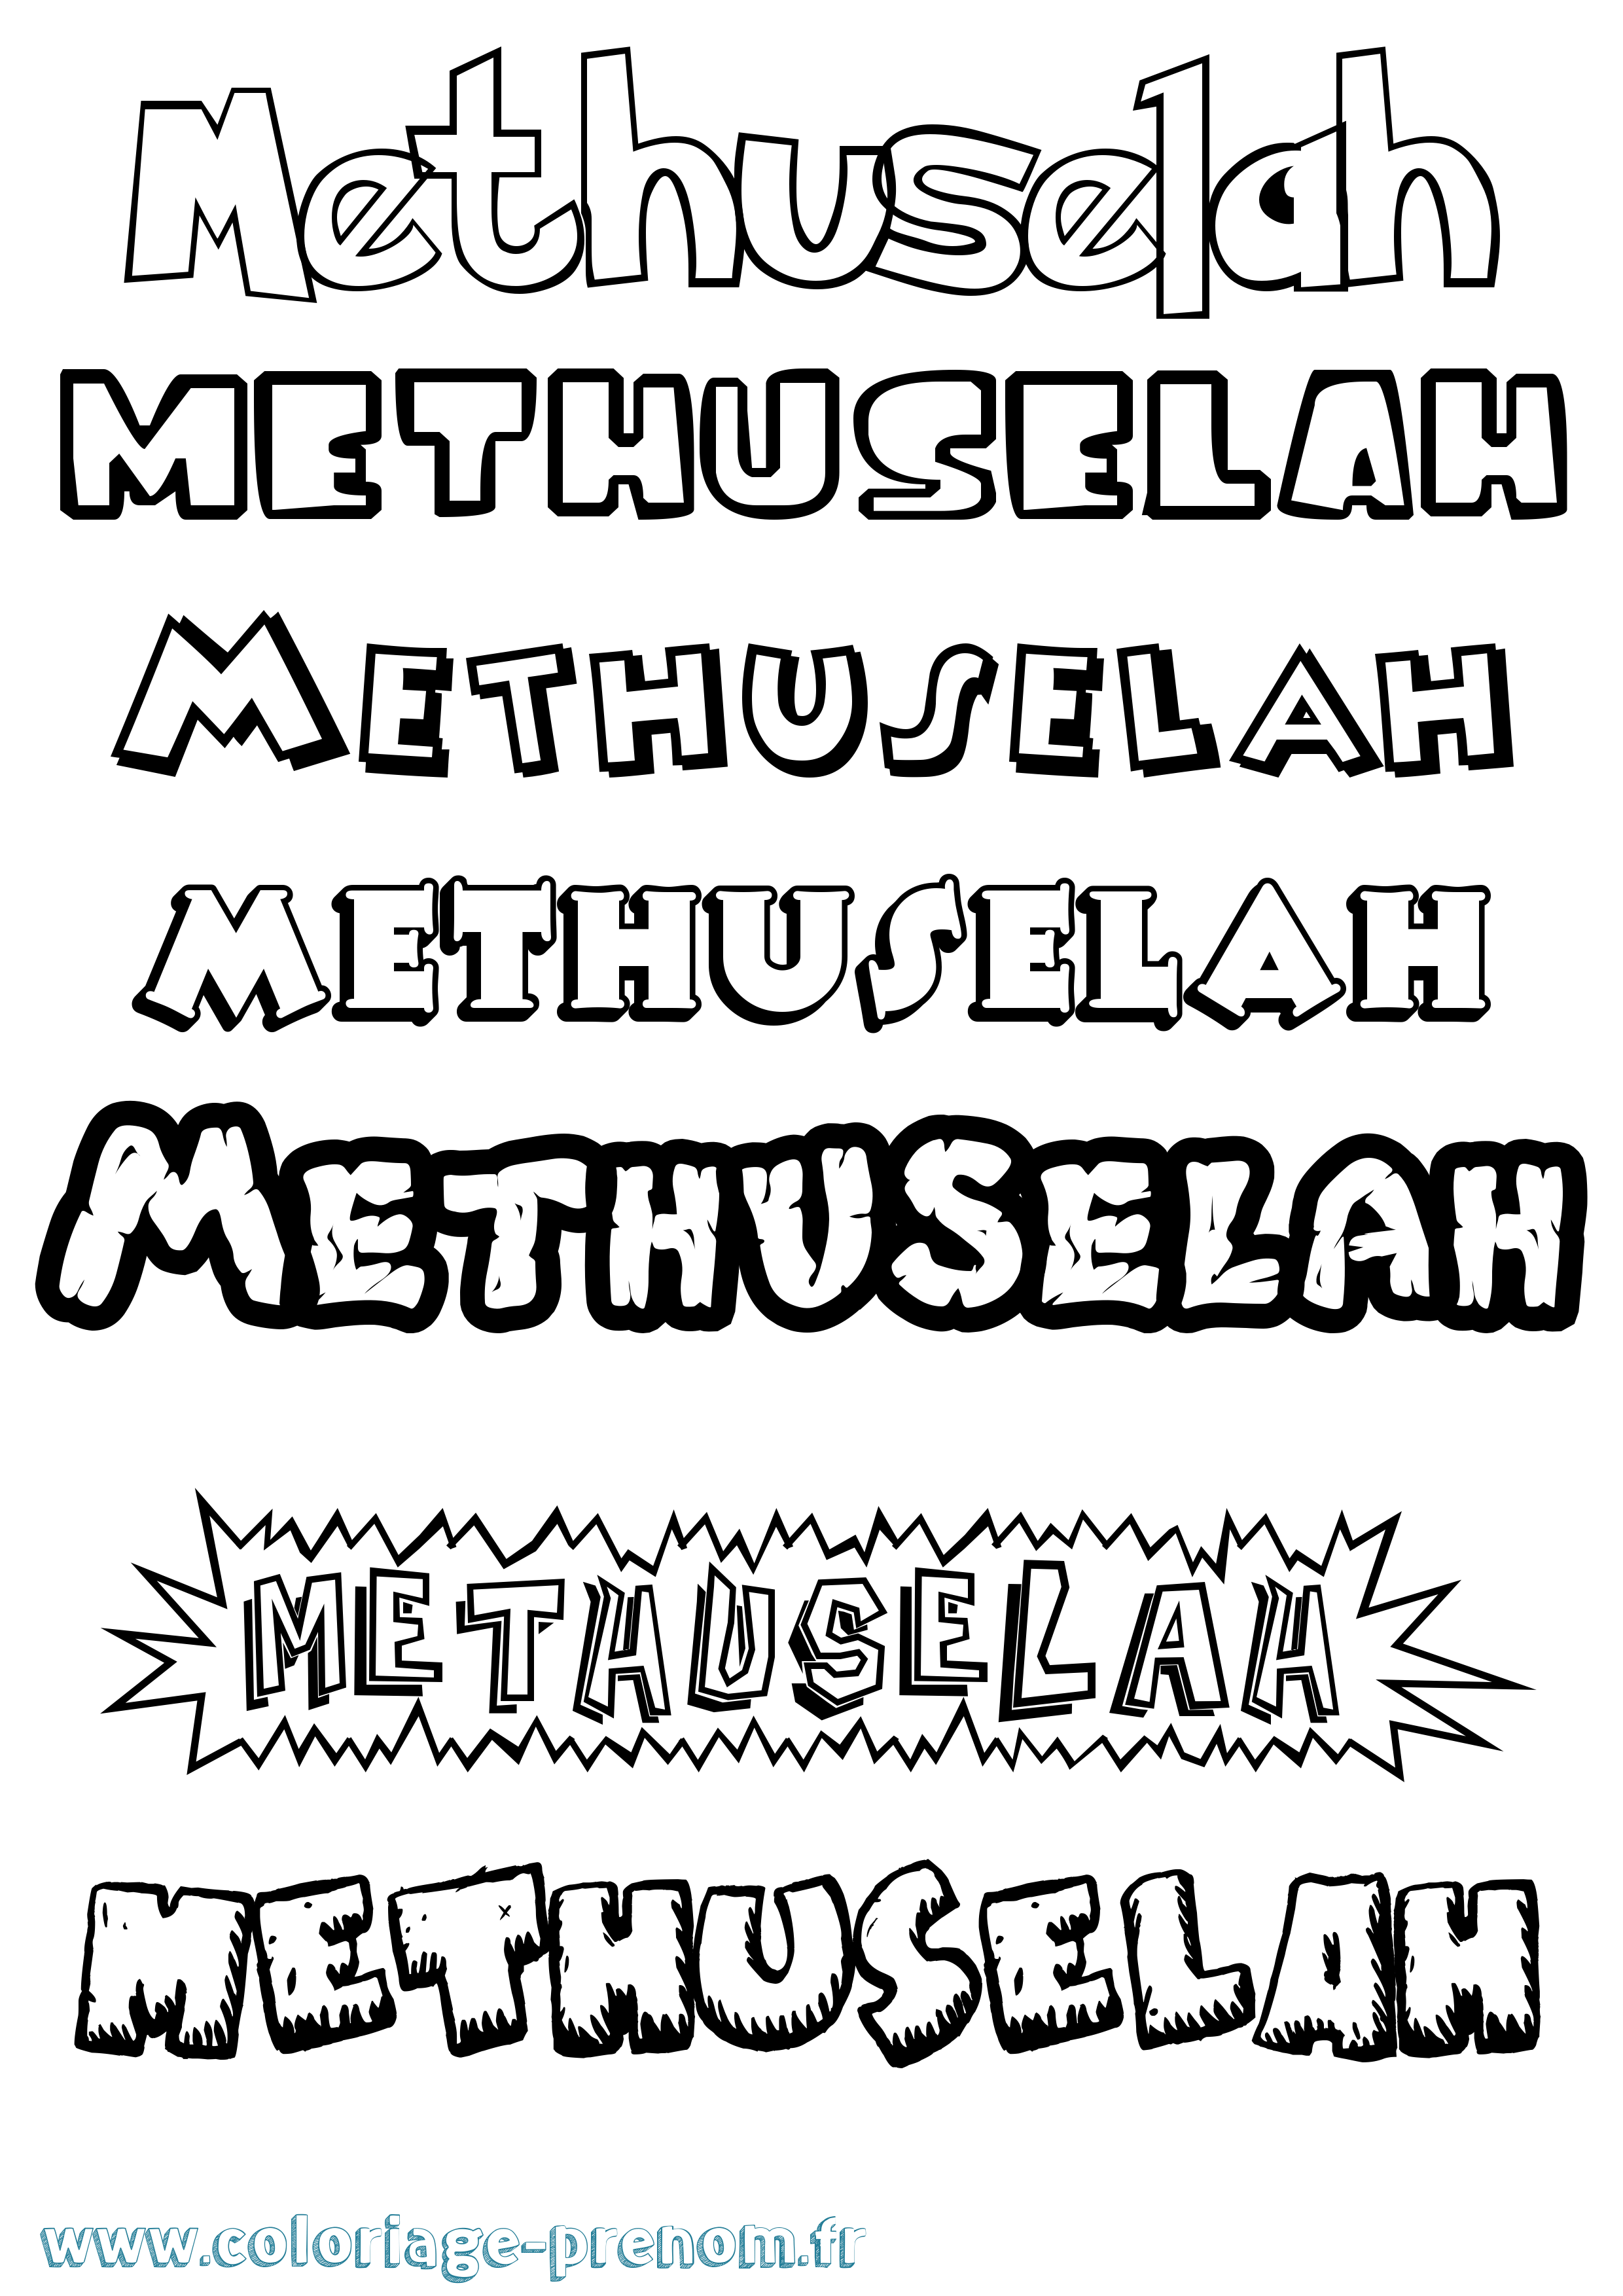 Coloriage prénom Methuselah Dessin Animé